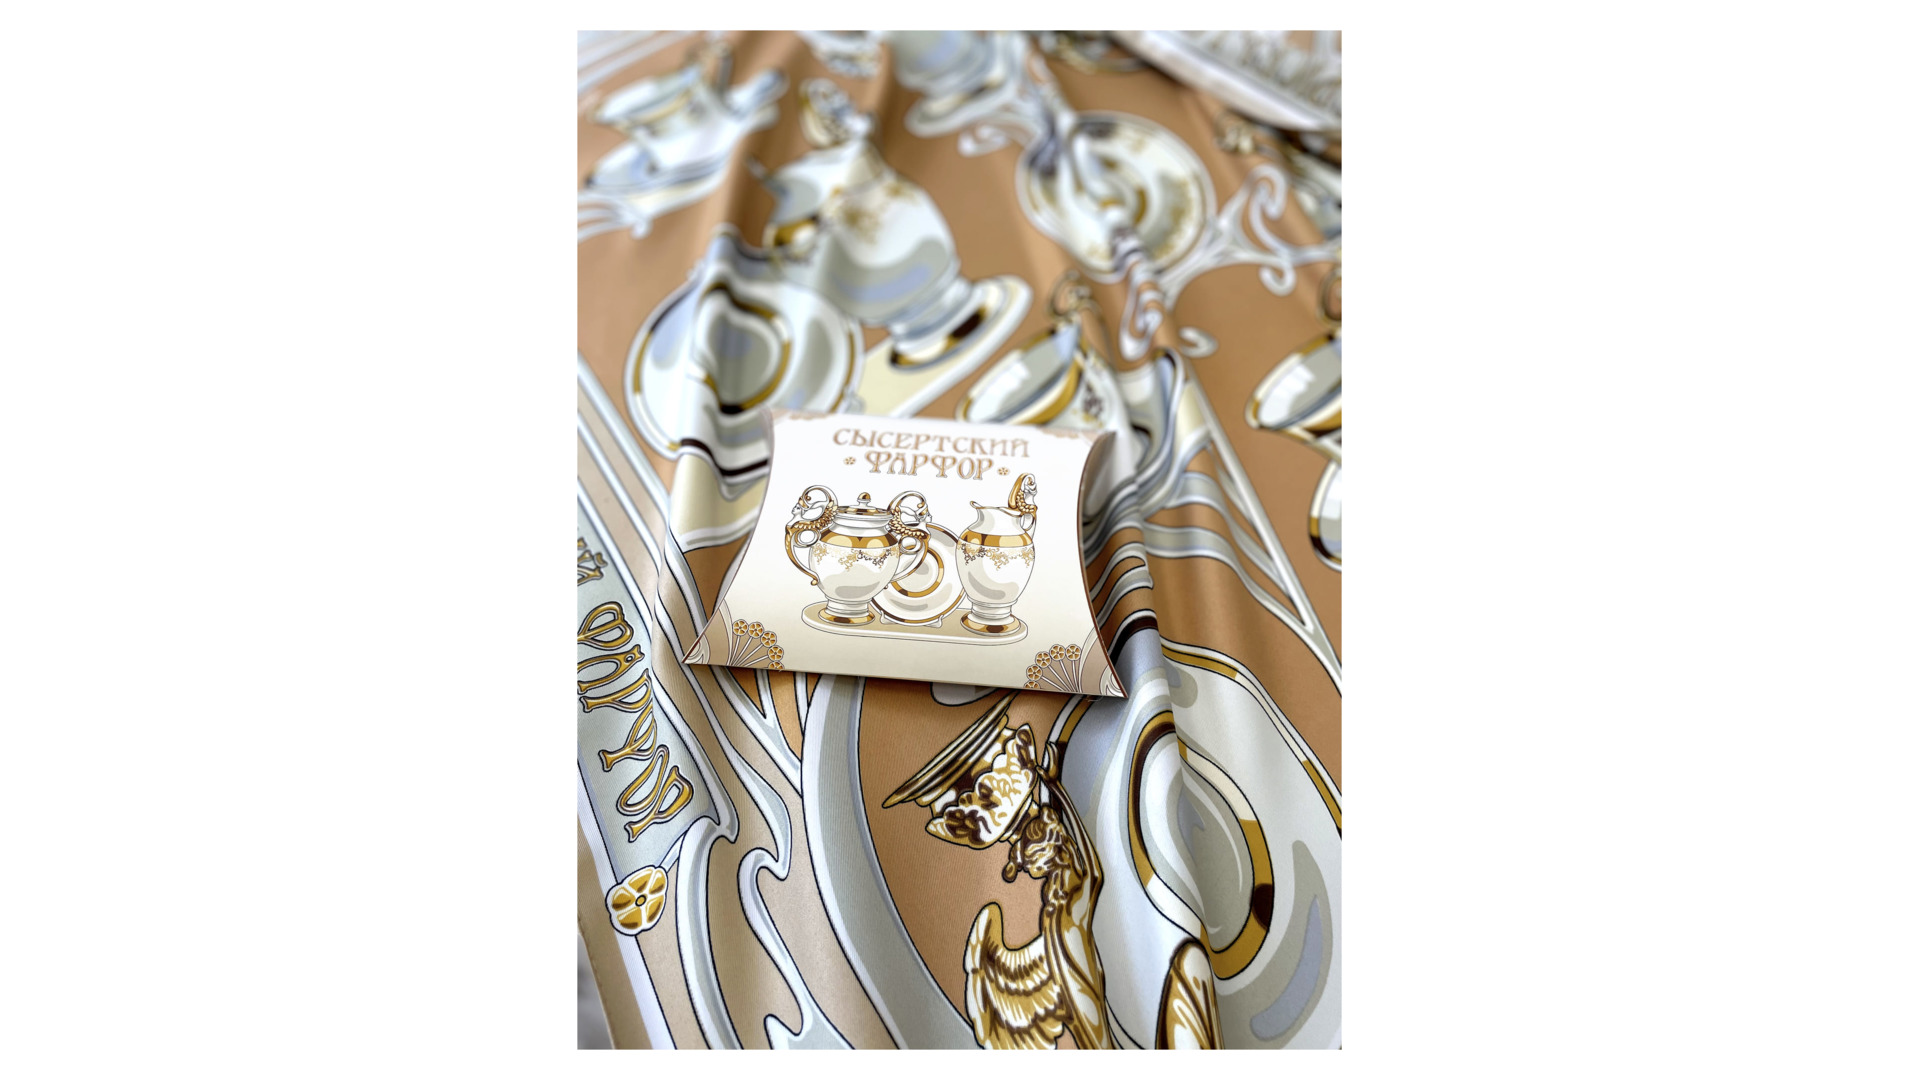 Платок сувенирный Русские в моде Сысертский фарфор 90х90 см, шелк, вискоза, машинная подшивка